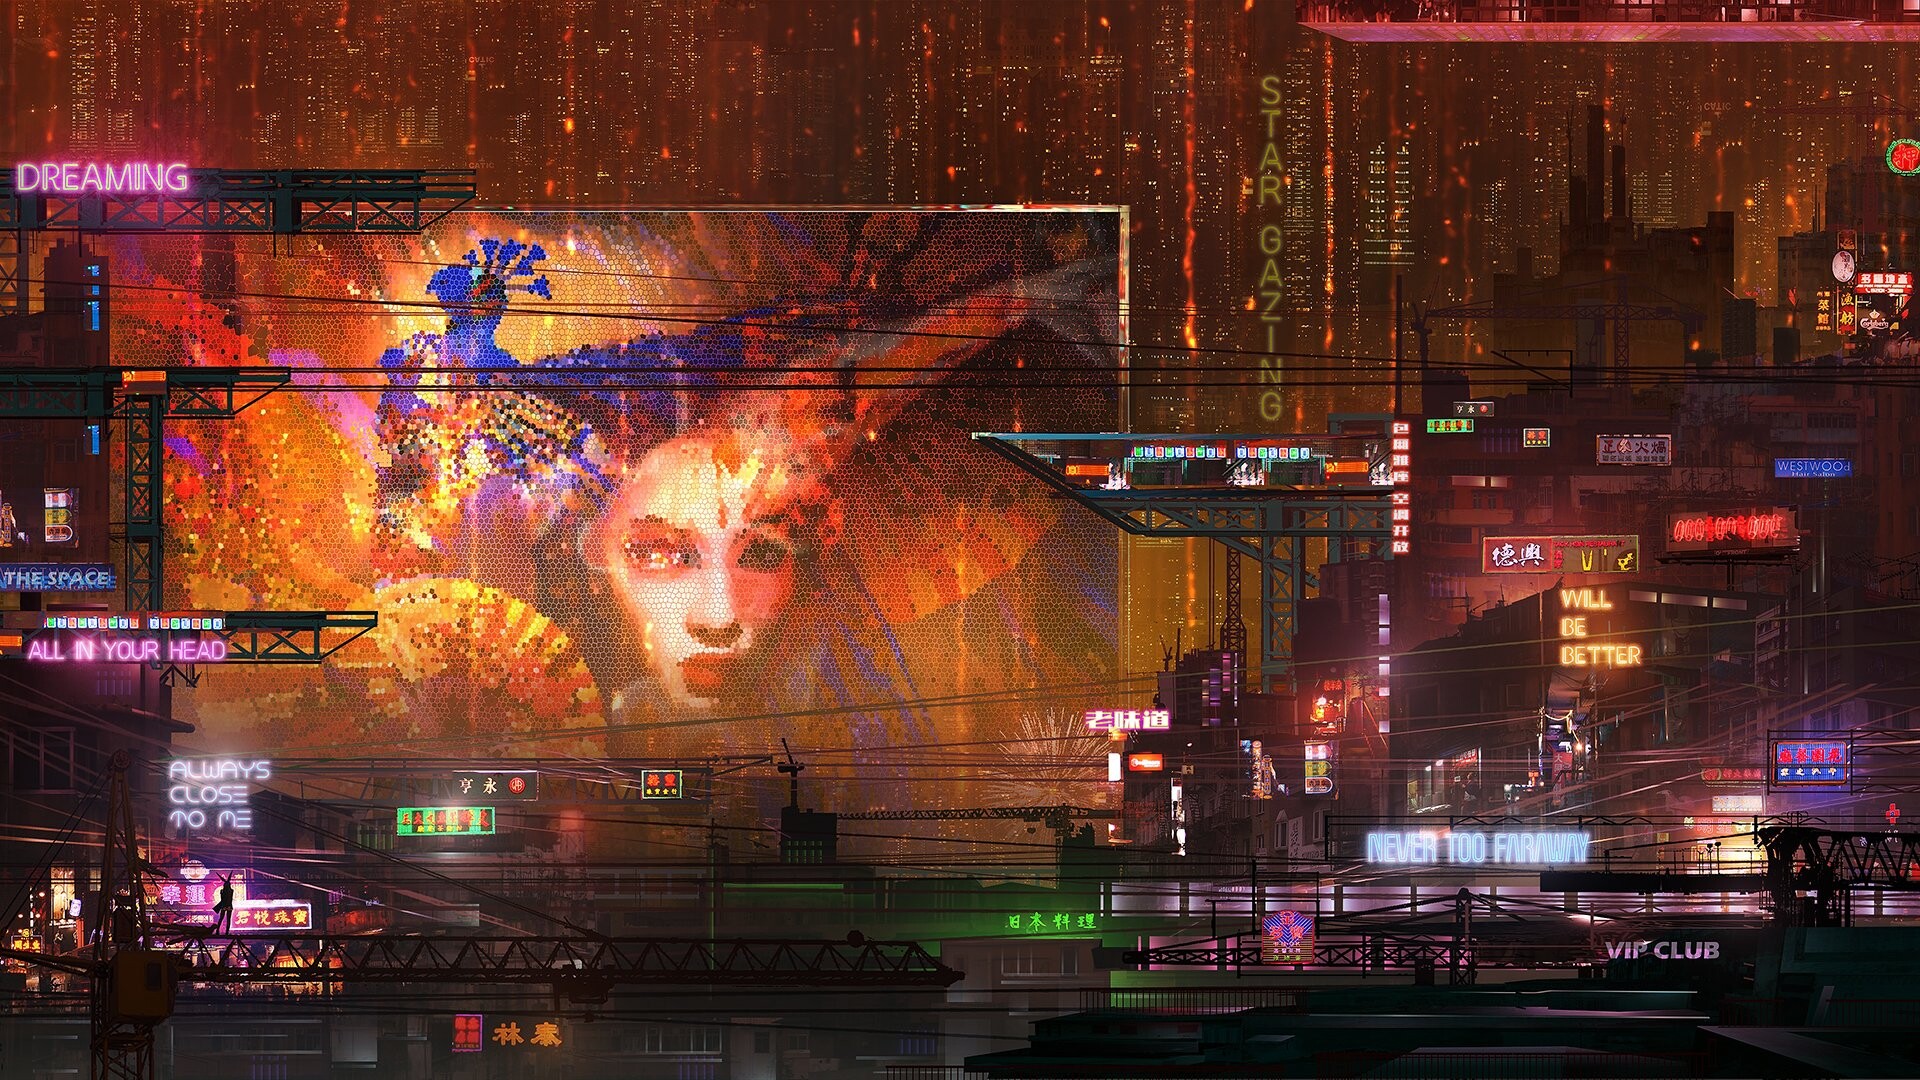 Donglu Yu Cyberpunk Futuristic Neon Futuristic City Street Artwork Digital Art Concept Art Skyscrape 1920x1080